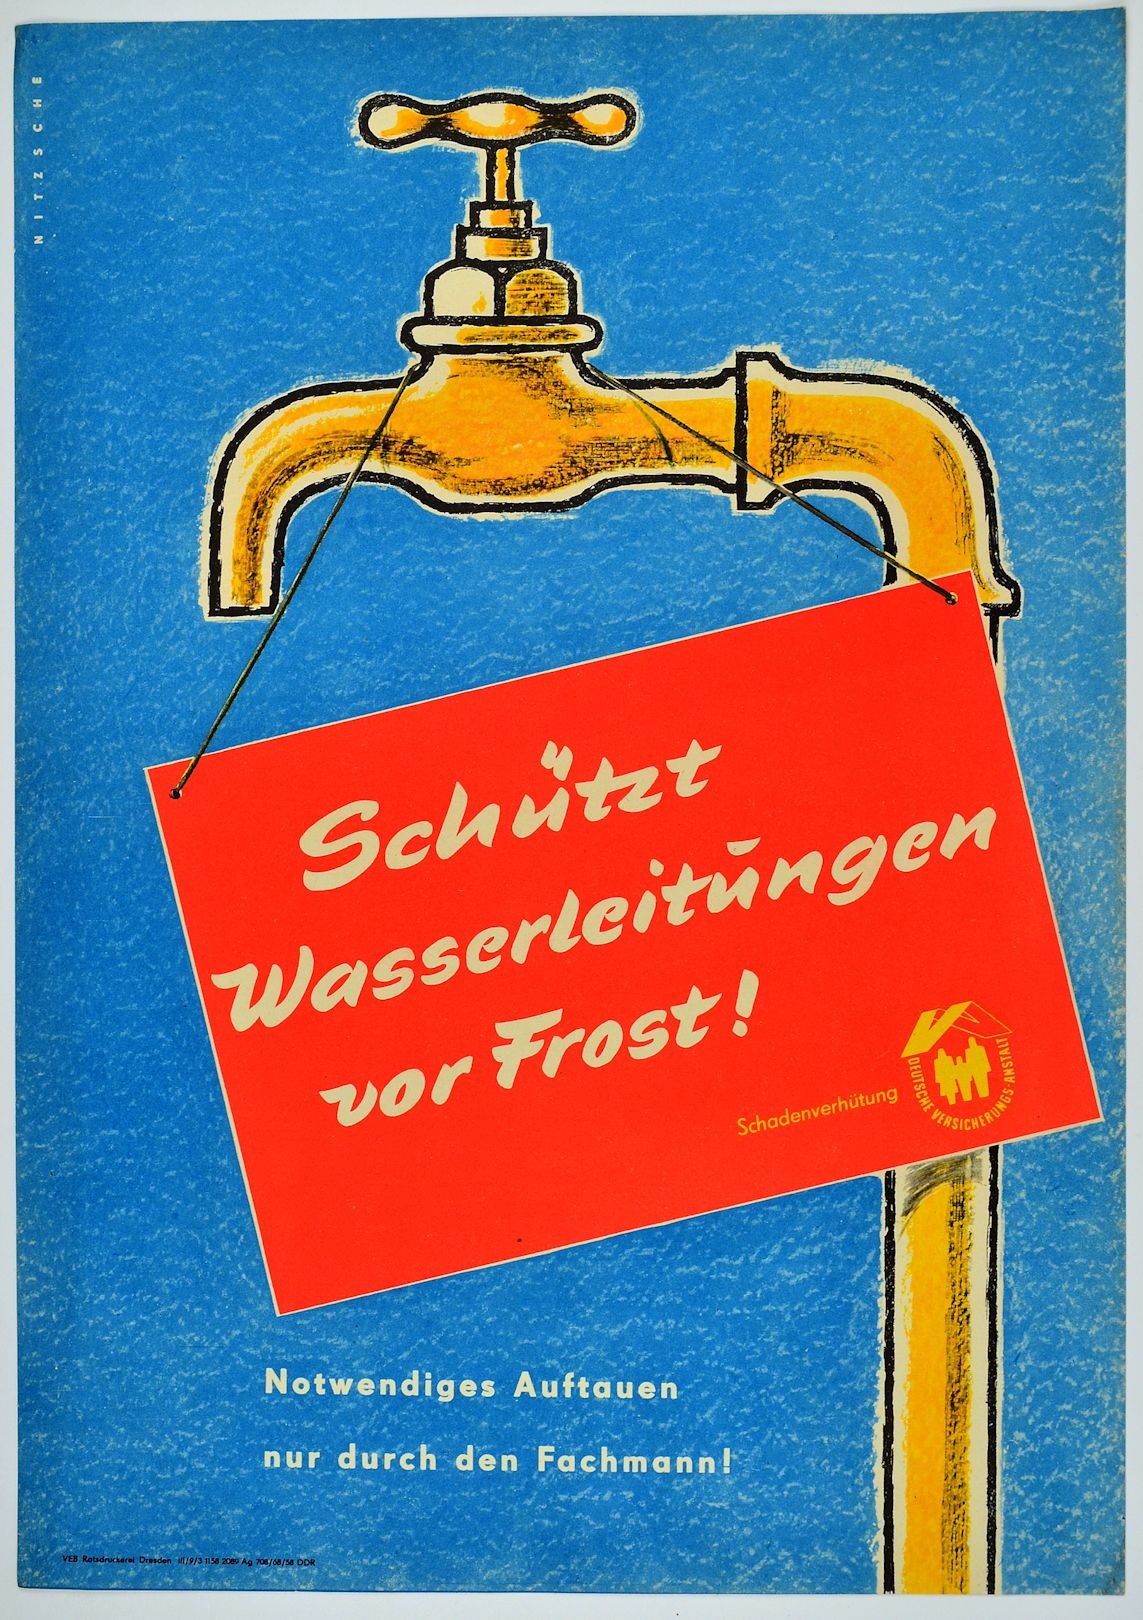 Schützt Wasseleitungen vor Frost! (Museum Weißenfels - Schloss Neu-Augustusburg CC BY-NC-SA)